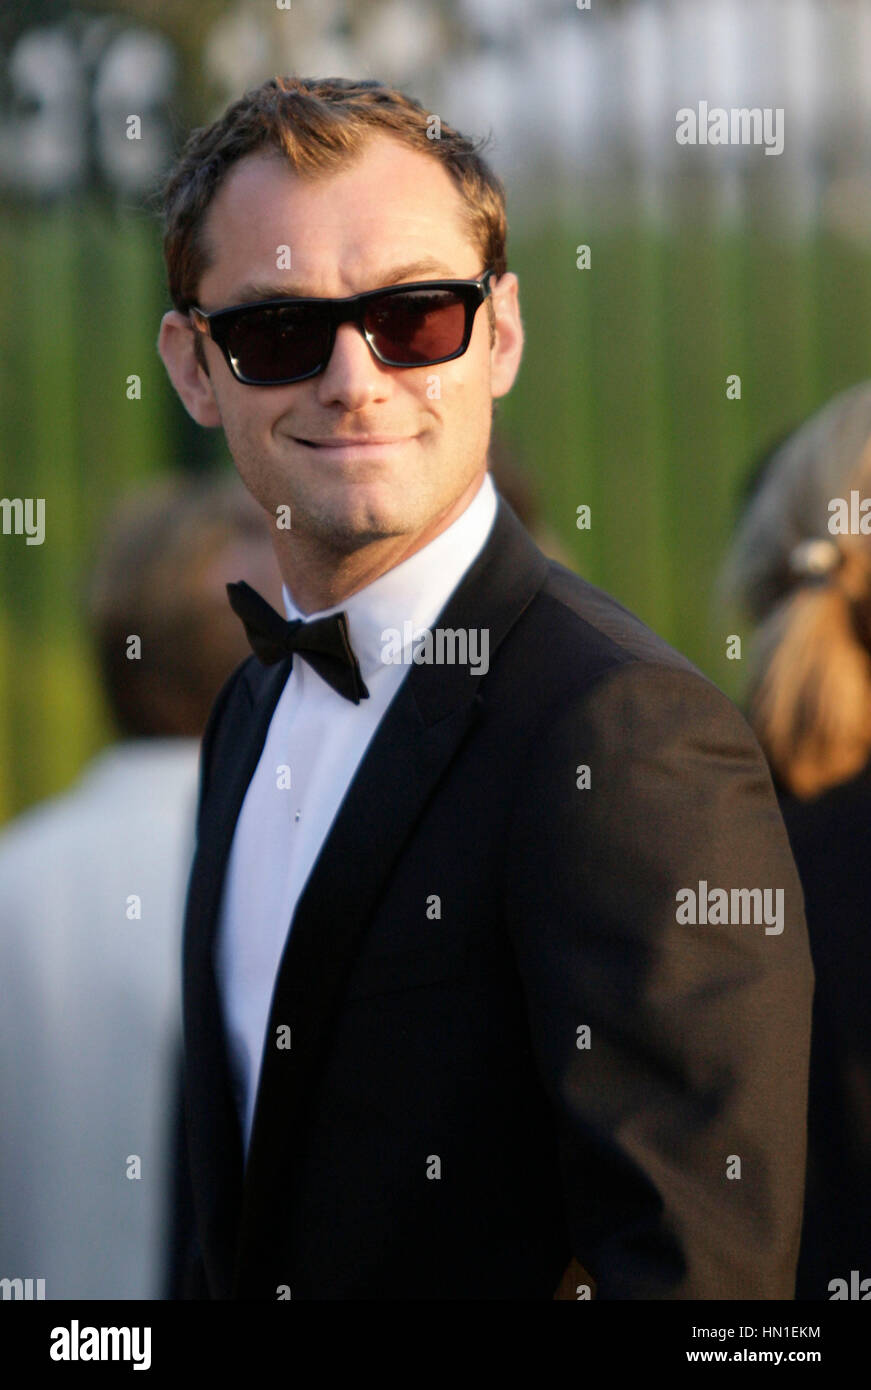 Jude Law arriva all'amFAR gala presso l'Hotel Du Cap di Antibes, in Francia il 19 maggio 2011. Foto di Francesco Specker Foto Stock